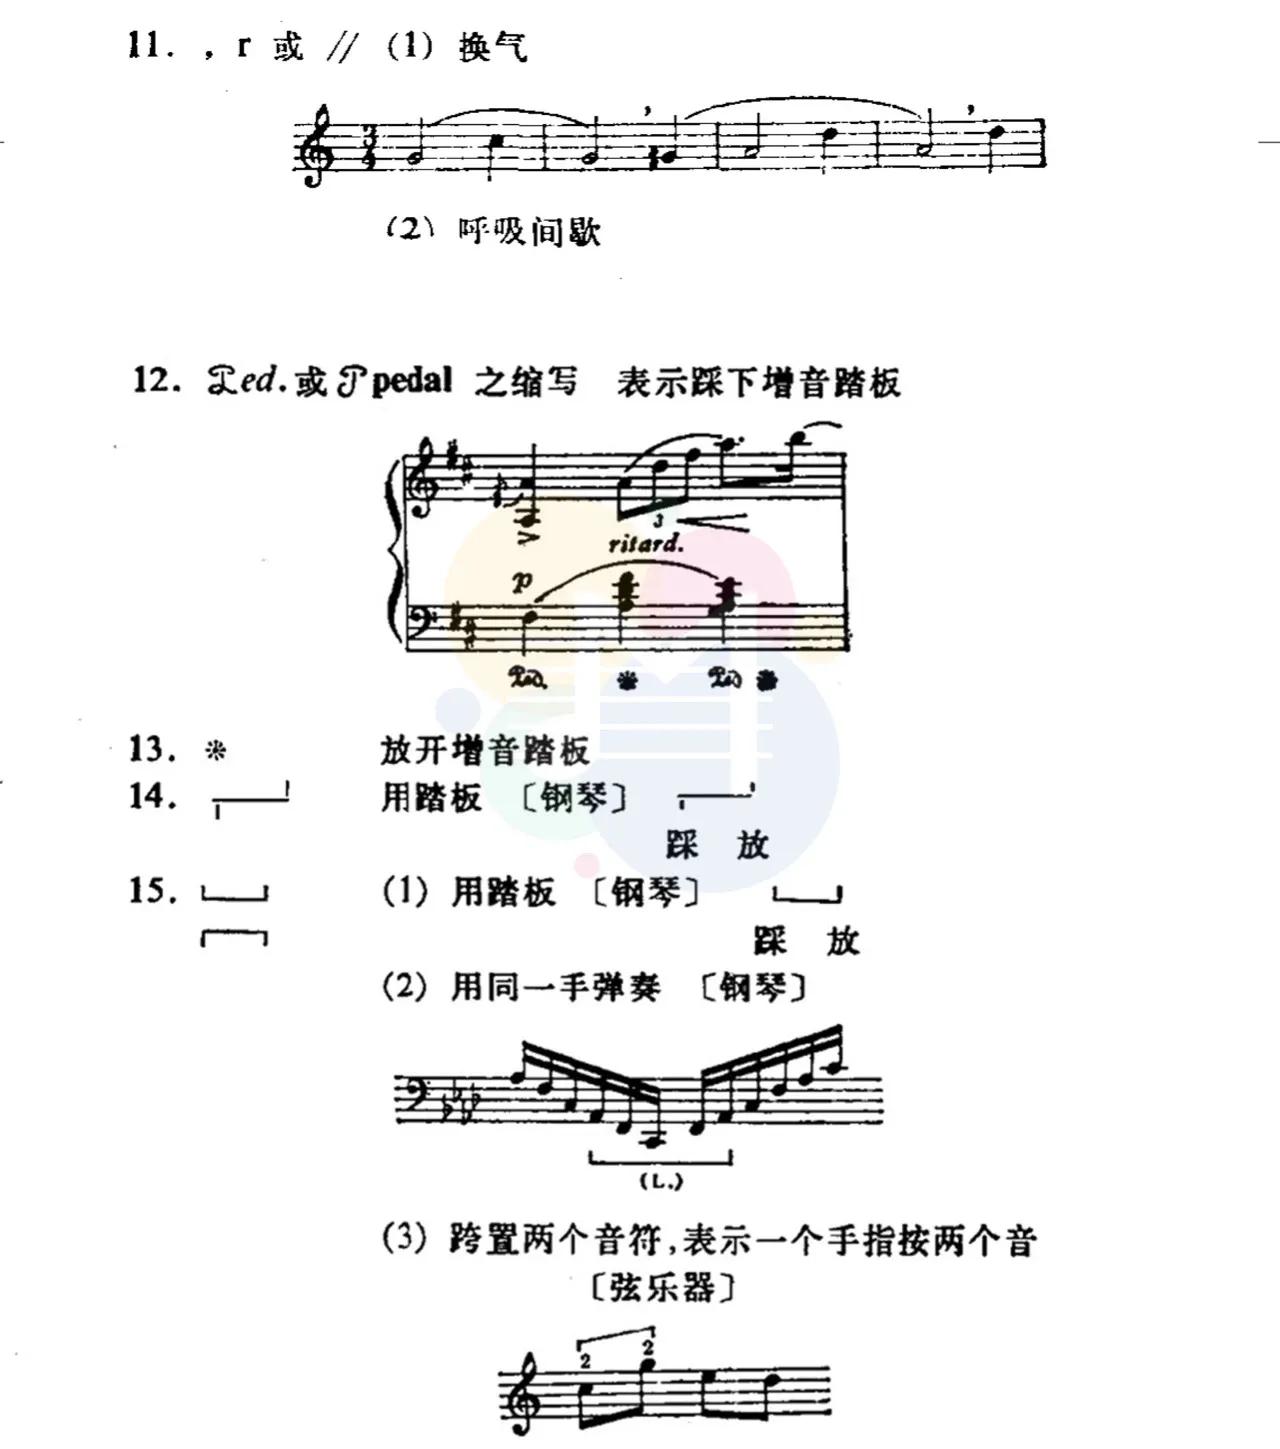 钢琴谱中的各种符号图片